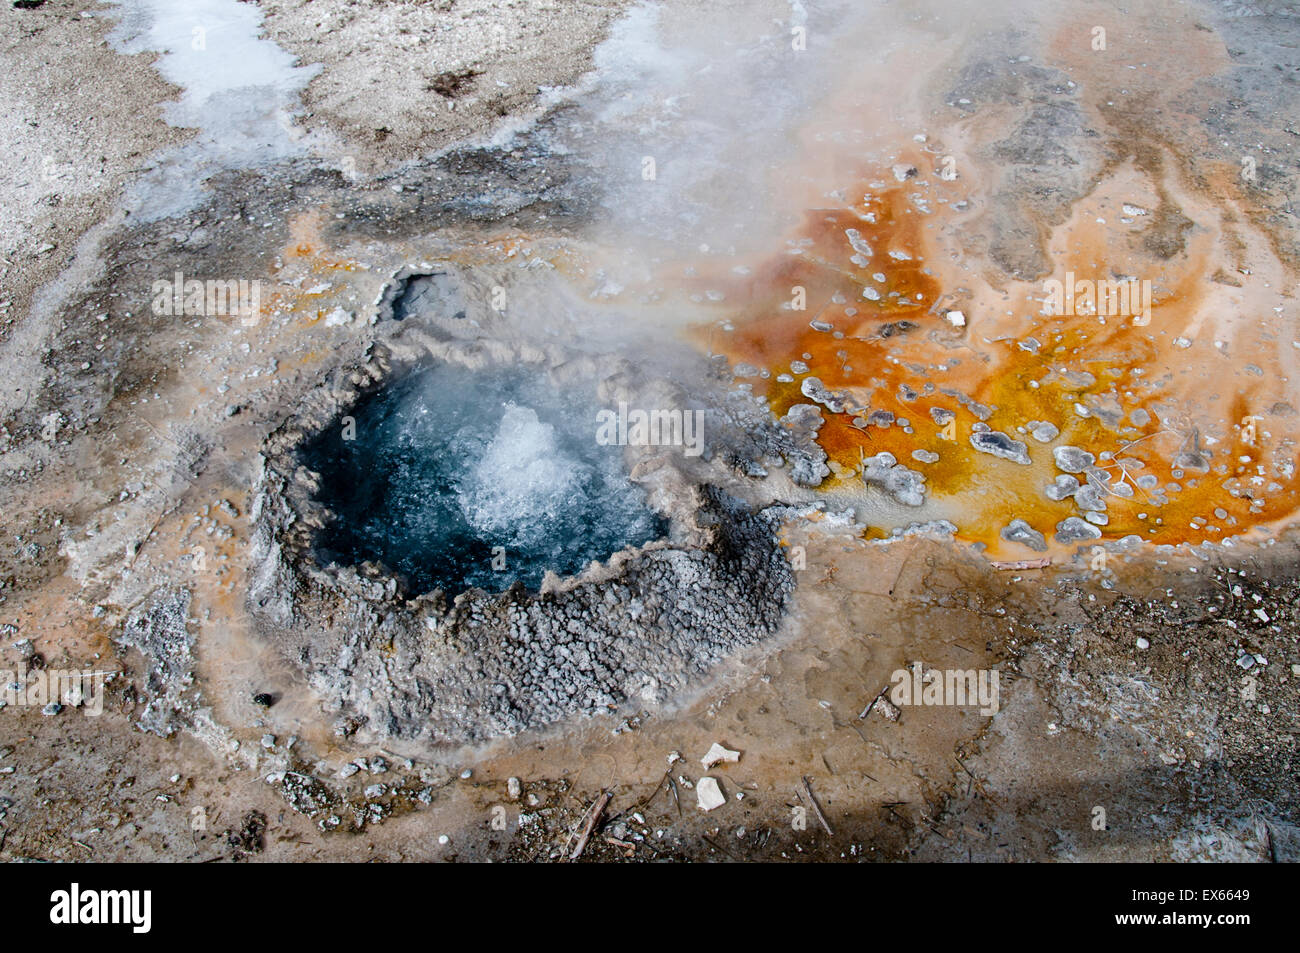 Printemps chinois dans le Parc National de Yellowstone WY montrant des tapis de bactéries thermophiles (orange) et une pointe de frittage Banque D'Images